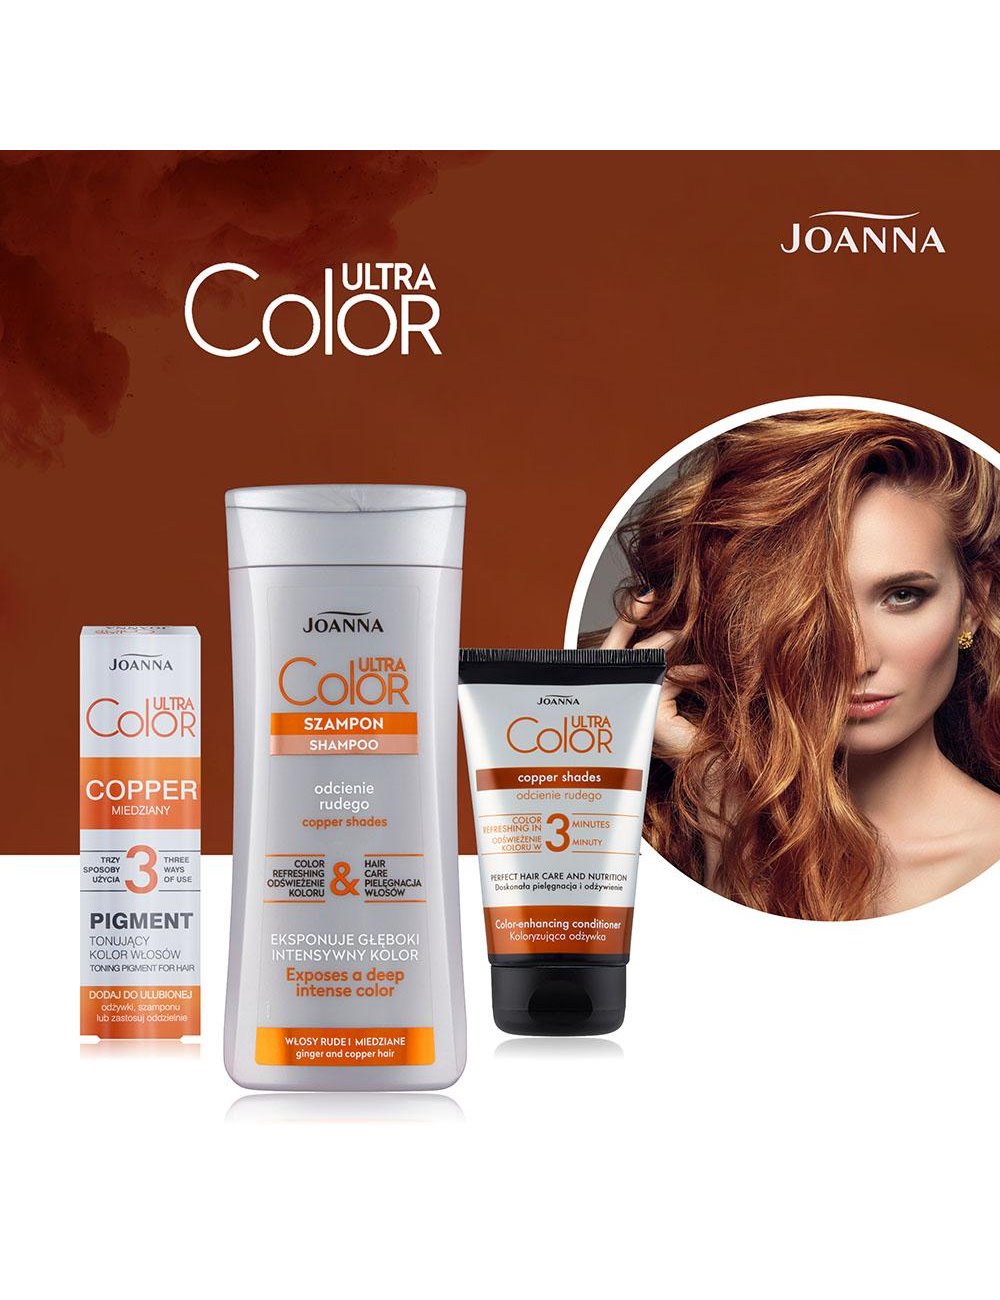 Joanna Ultra Color Szampon Do Włosów Rudych, Czerwonych, Kasztanowych – Eksponuje Głęboki, Intnsywny Kolor I Połysk 200ml